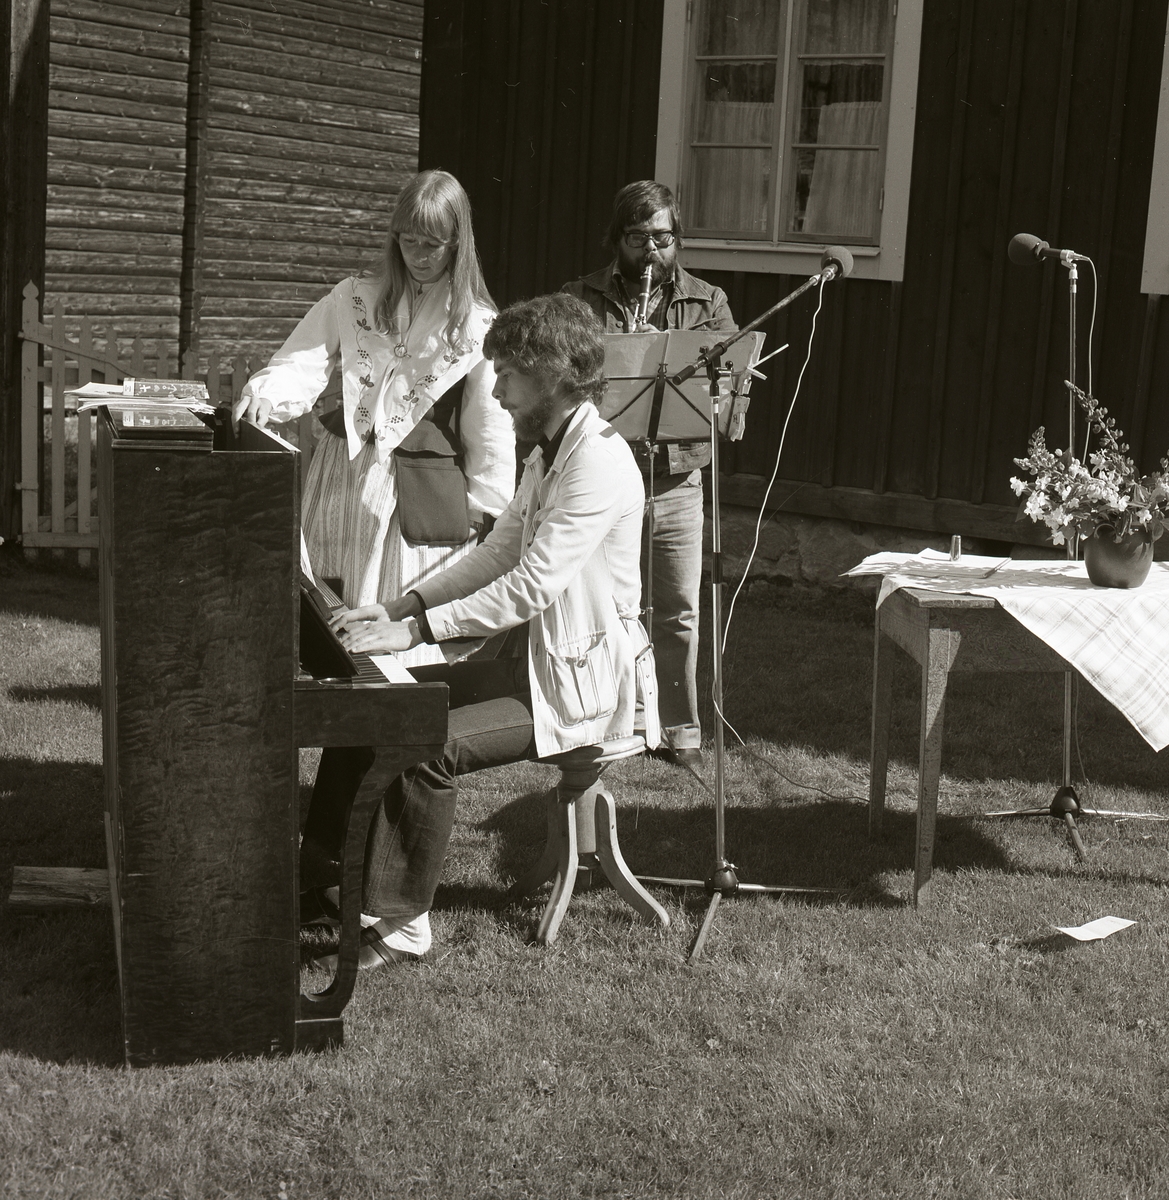 Tre personer musicerar under Rengsjöfesten 16 juli 1978. En man spelar på ett piano medan en kvinna iförd folkdräkt står bredvid och bakom henne står ytterligare en man som spelar flöjt.